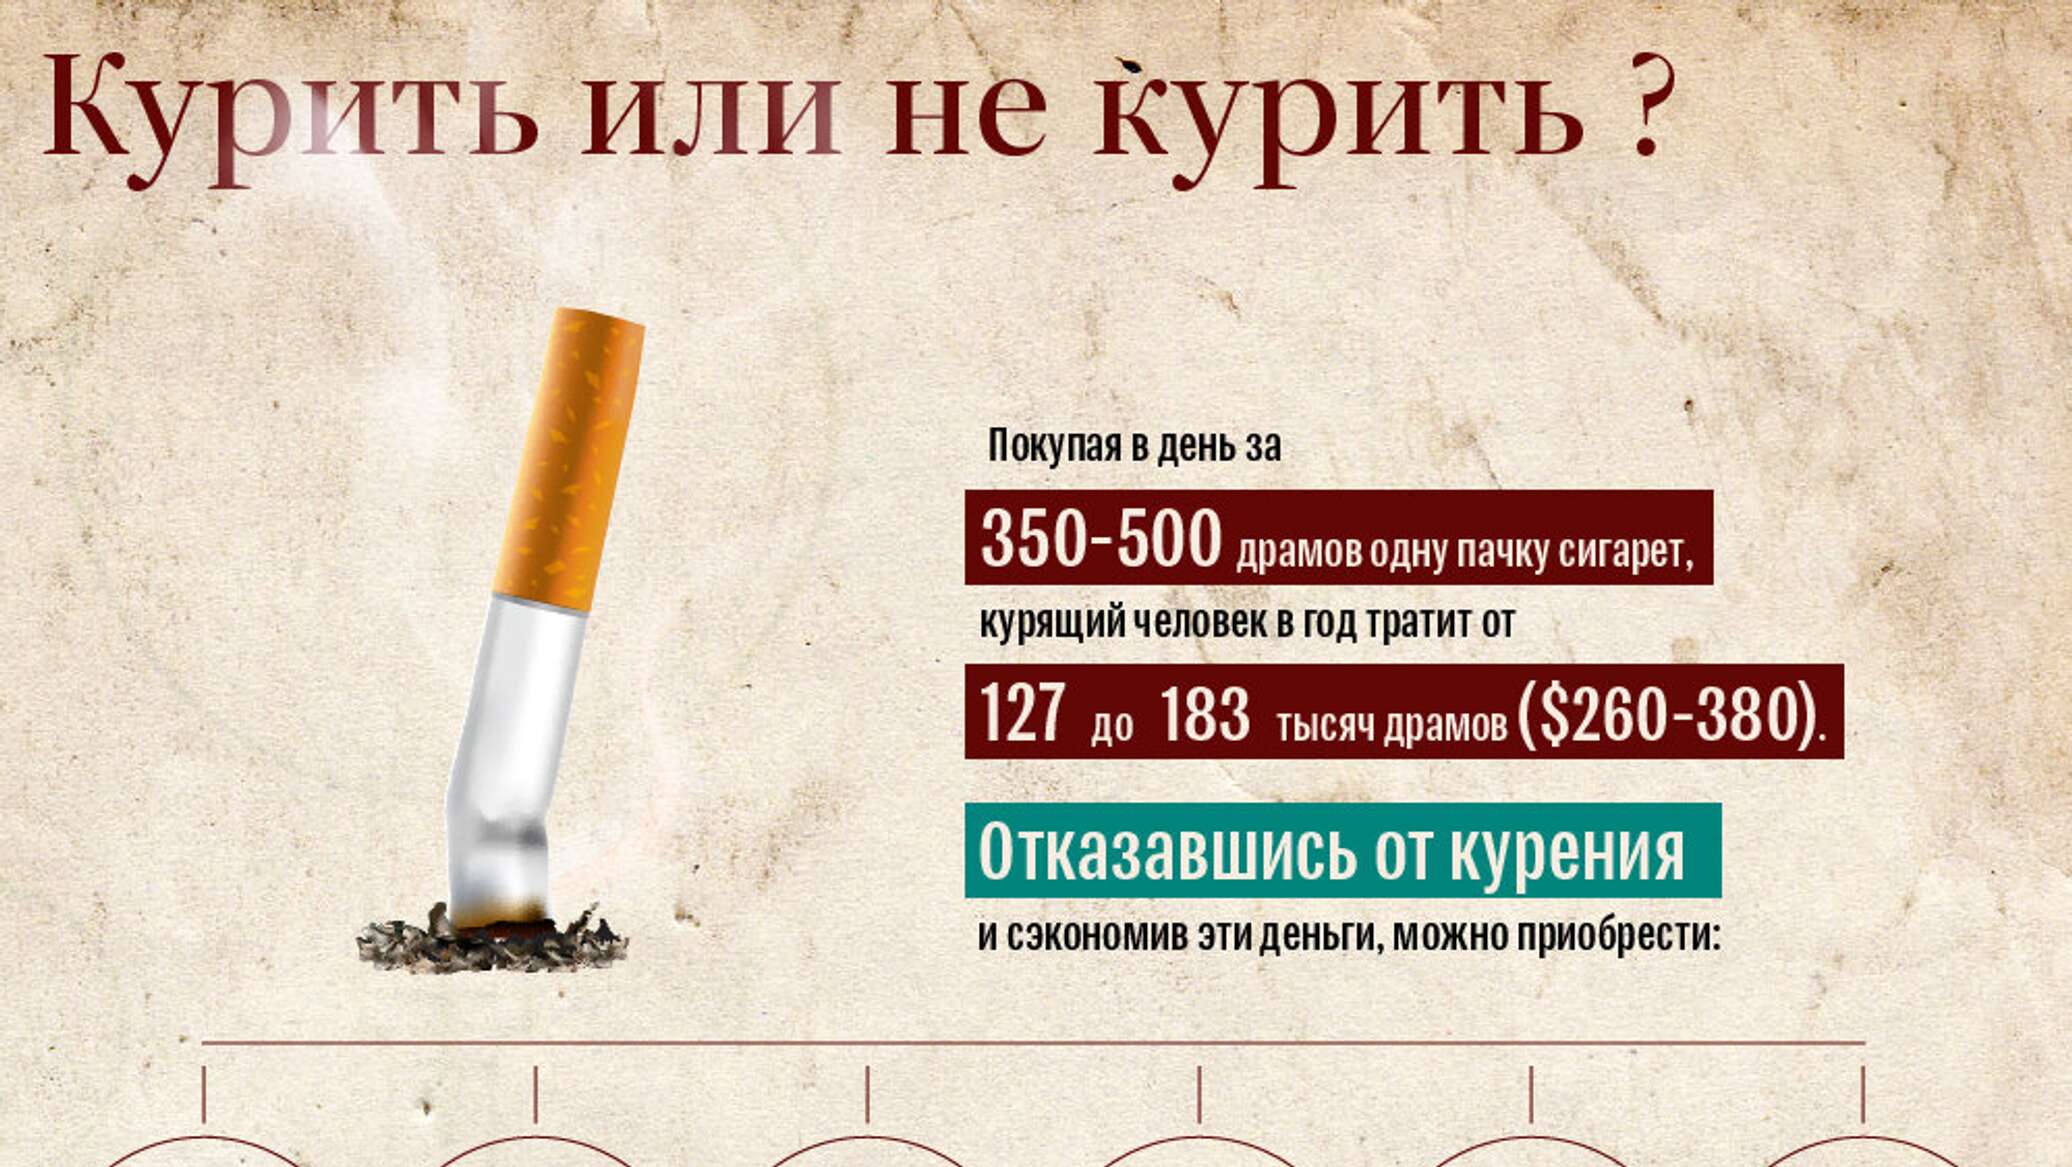 Во время поста можно курить сигареты рамадан. Курение инфографика. Инфографика о вреде курения. Инфографика по курению. Инфографика отказ от курения.